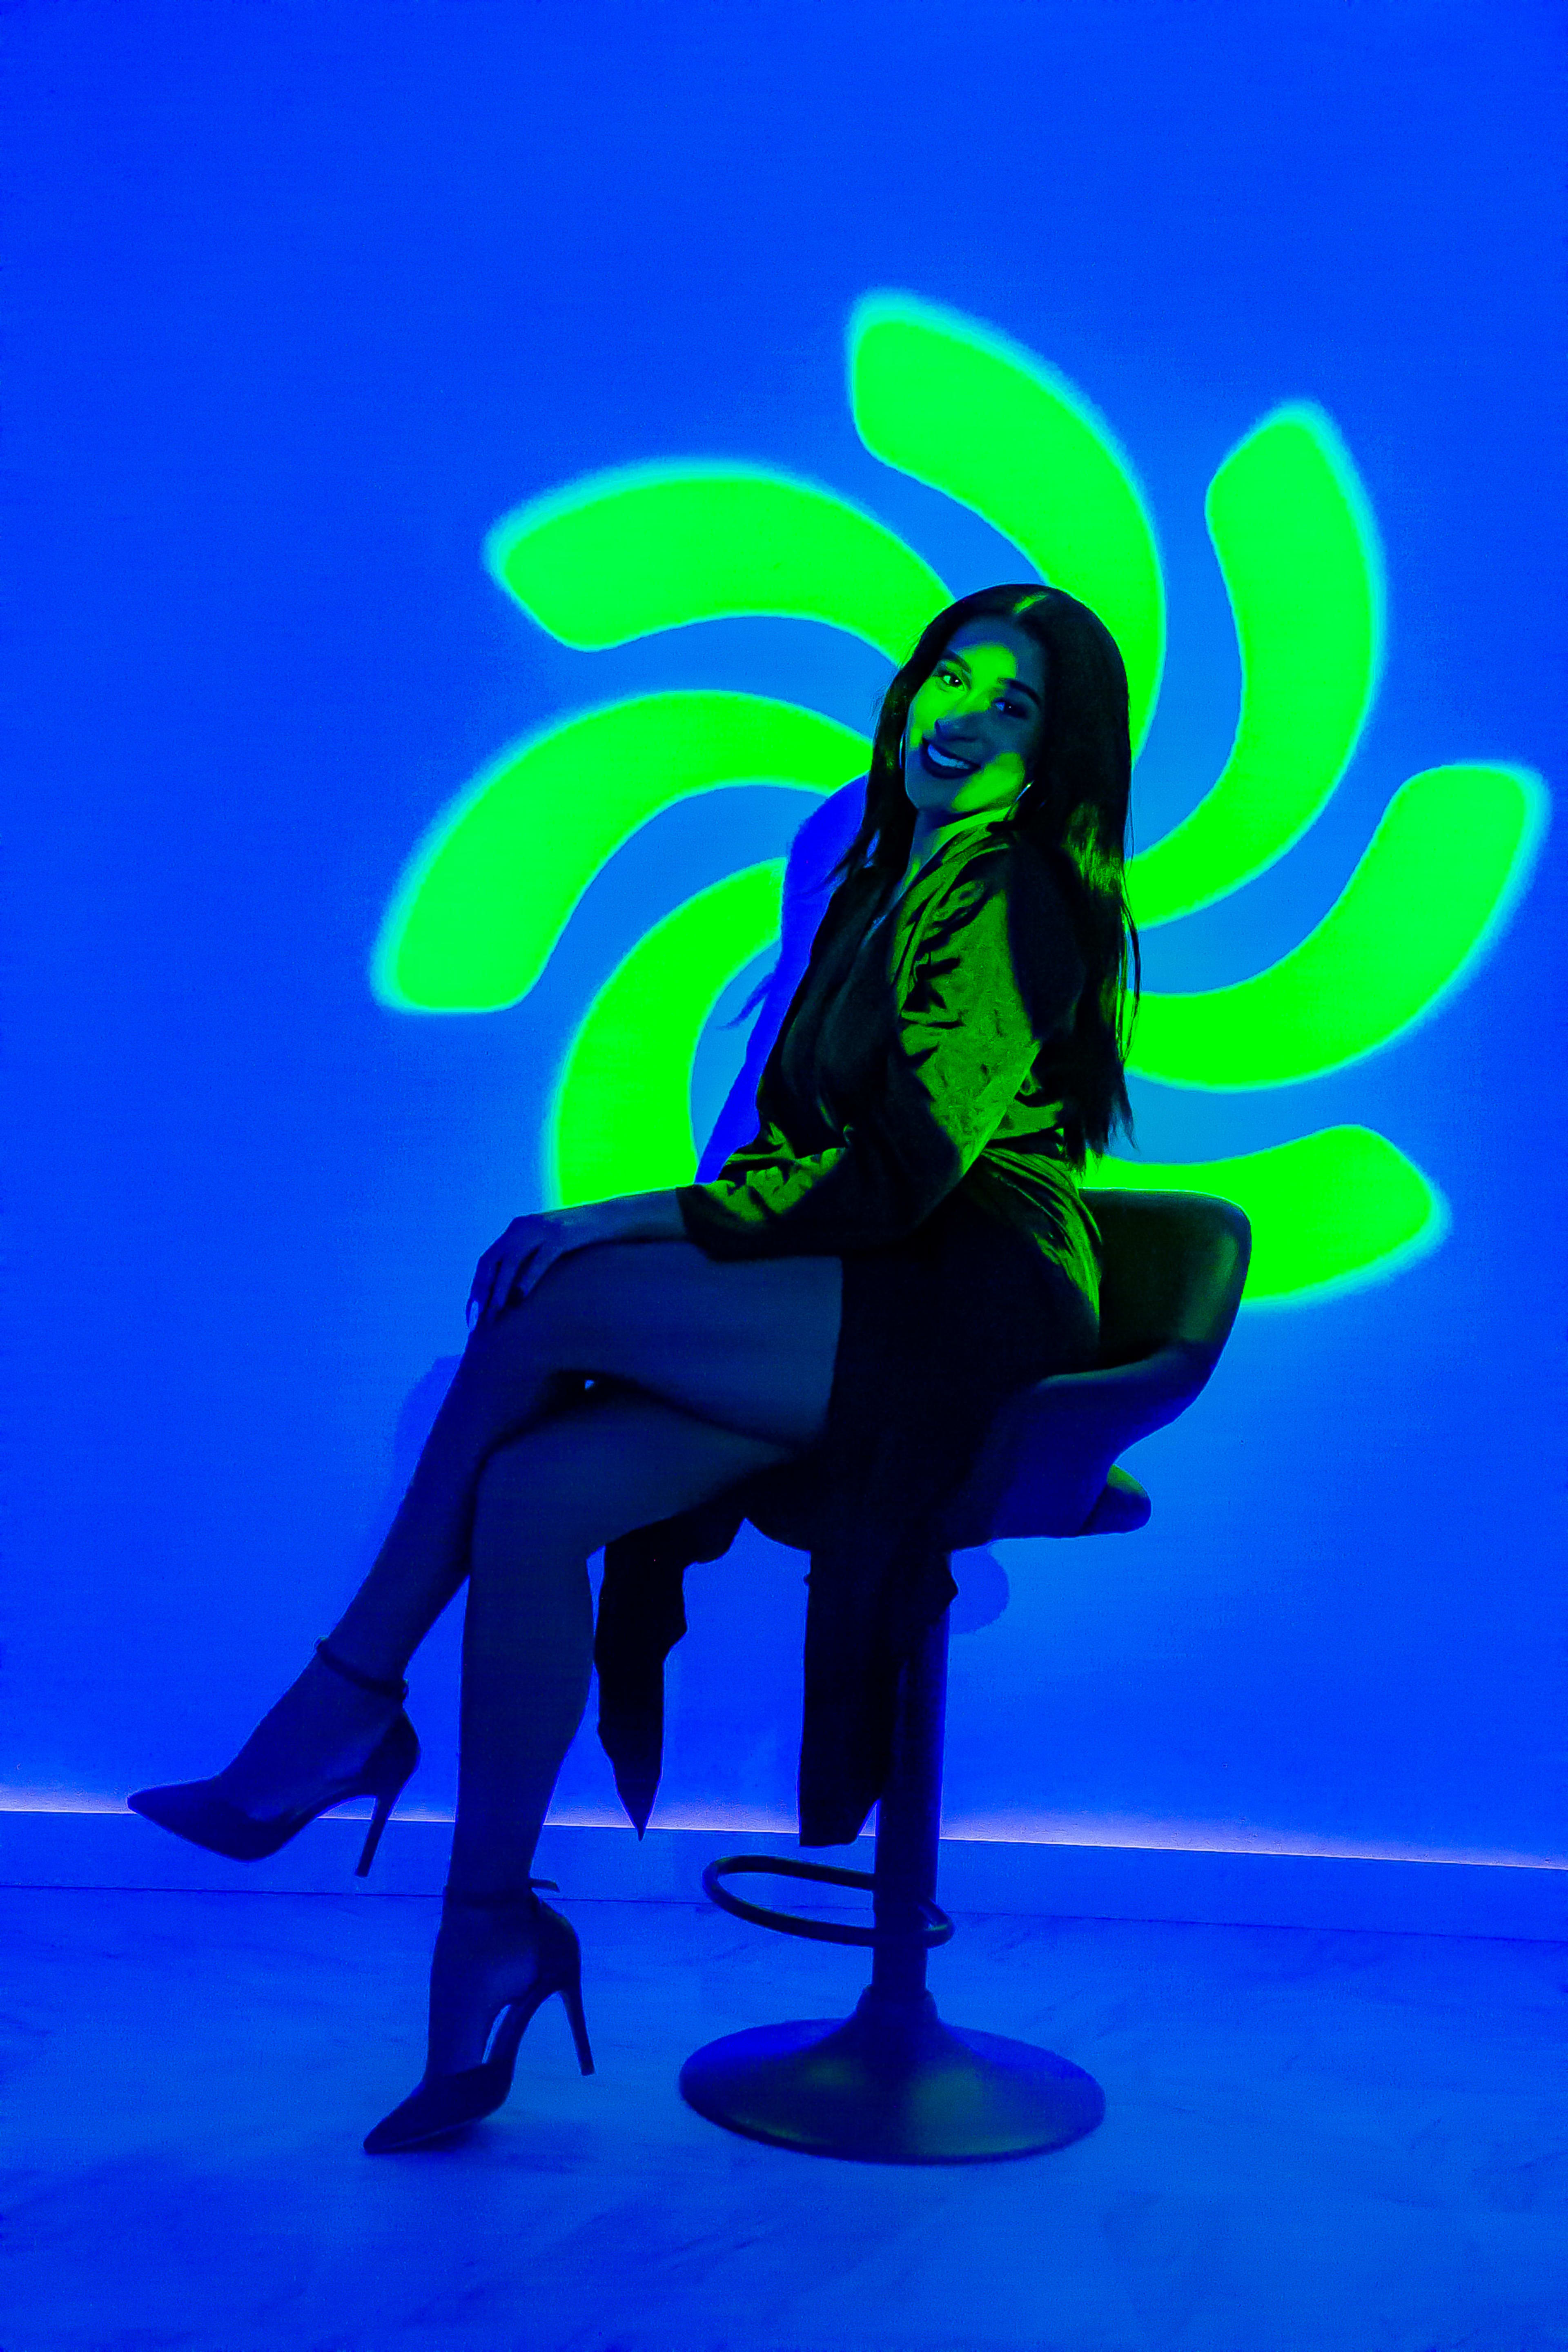 Un shooting photo de mode d'une femme sur une chaise devant un mur bleu fluo.